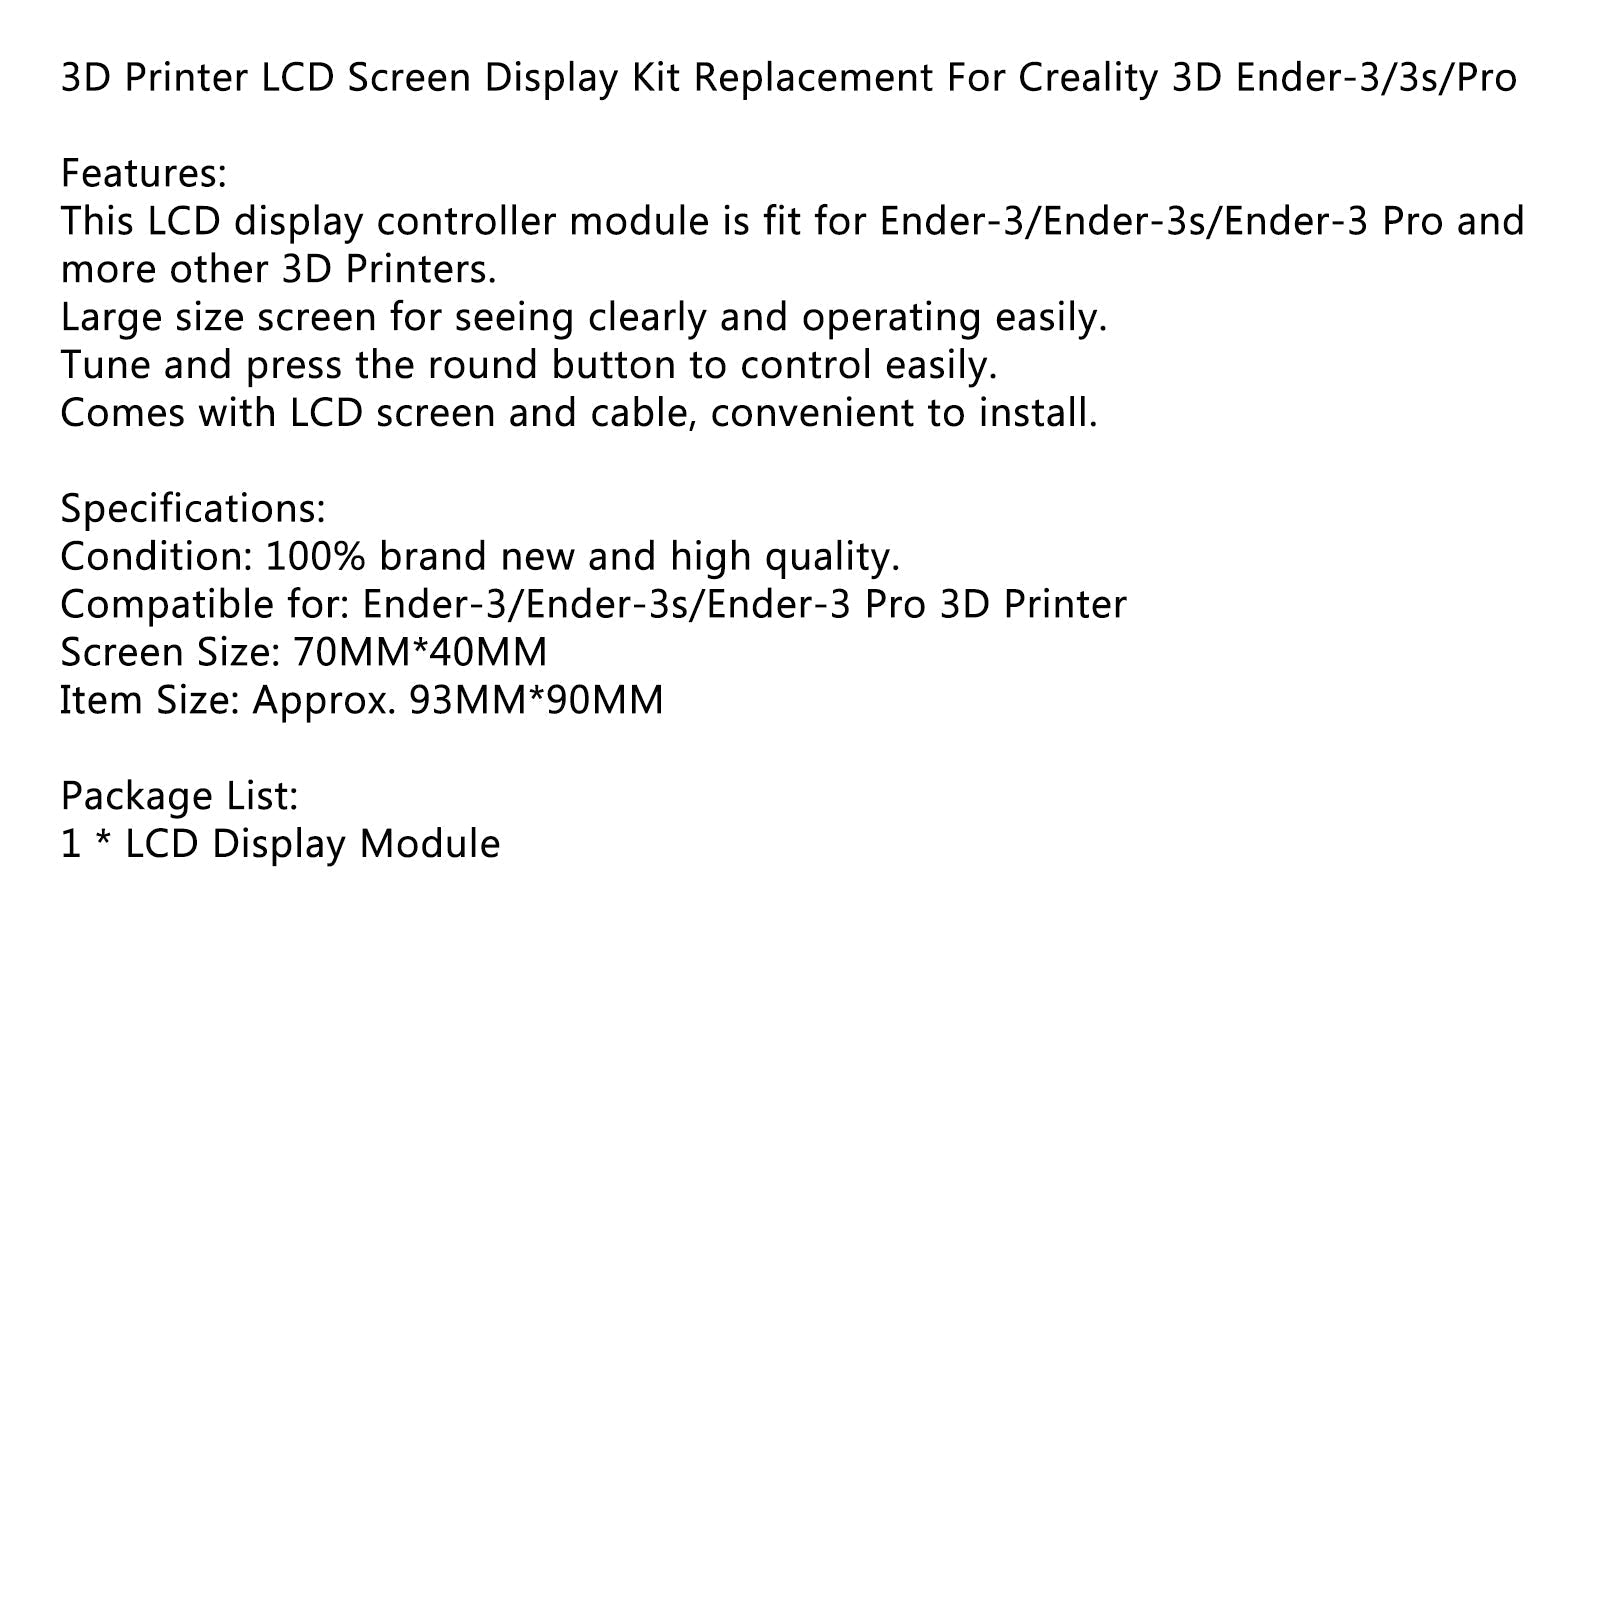 Sostituzione del kit di visualizzazione dello schermo LCD della stampante 3D per Creality 3D Ender-3/3s/Pro